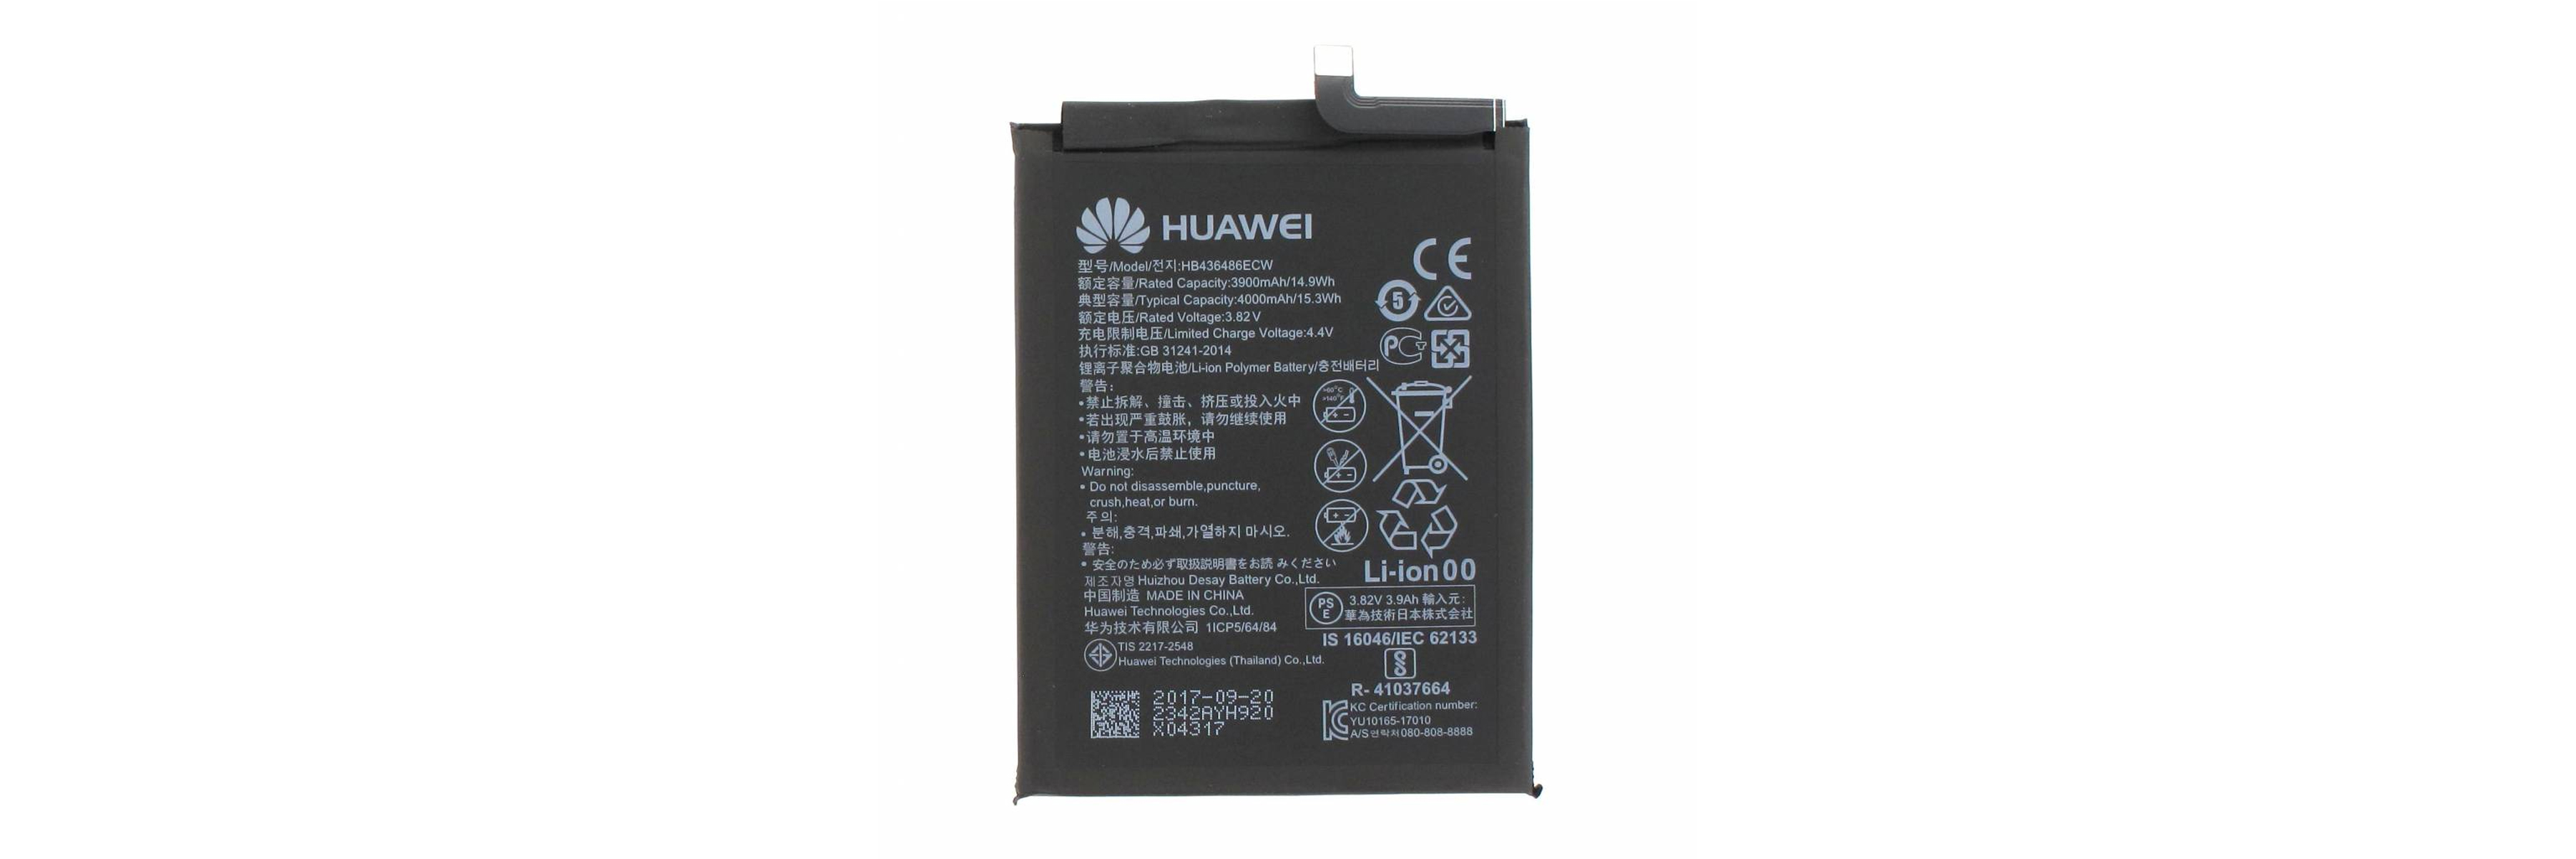 Ersetzen des Huawei P20 Pro Akkus